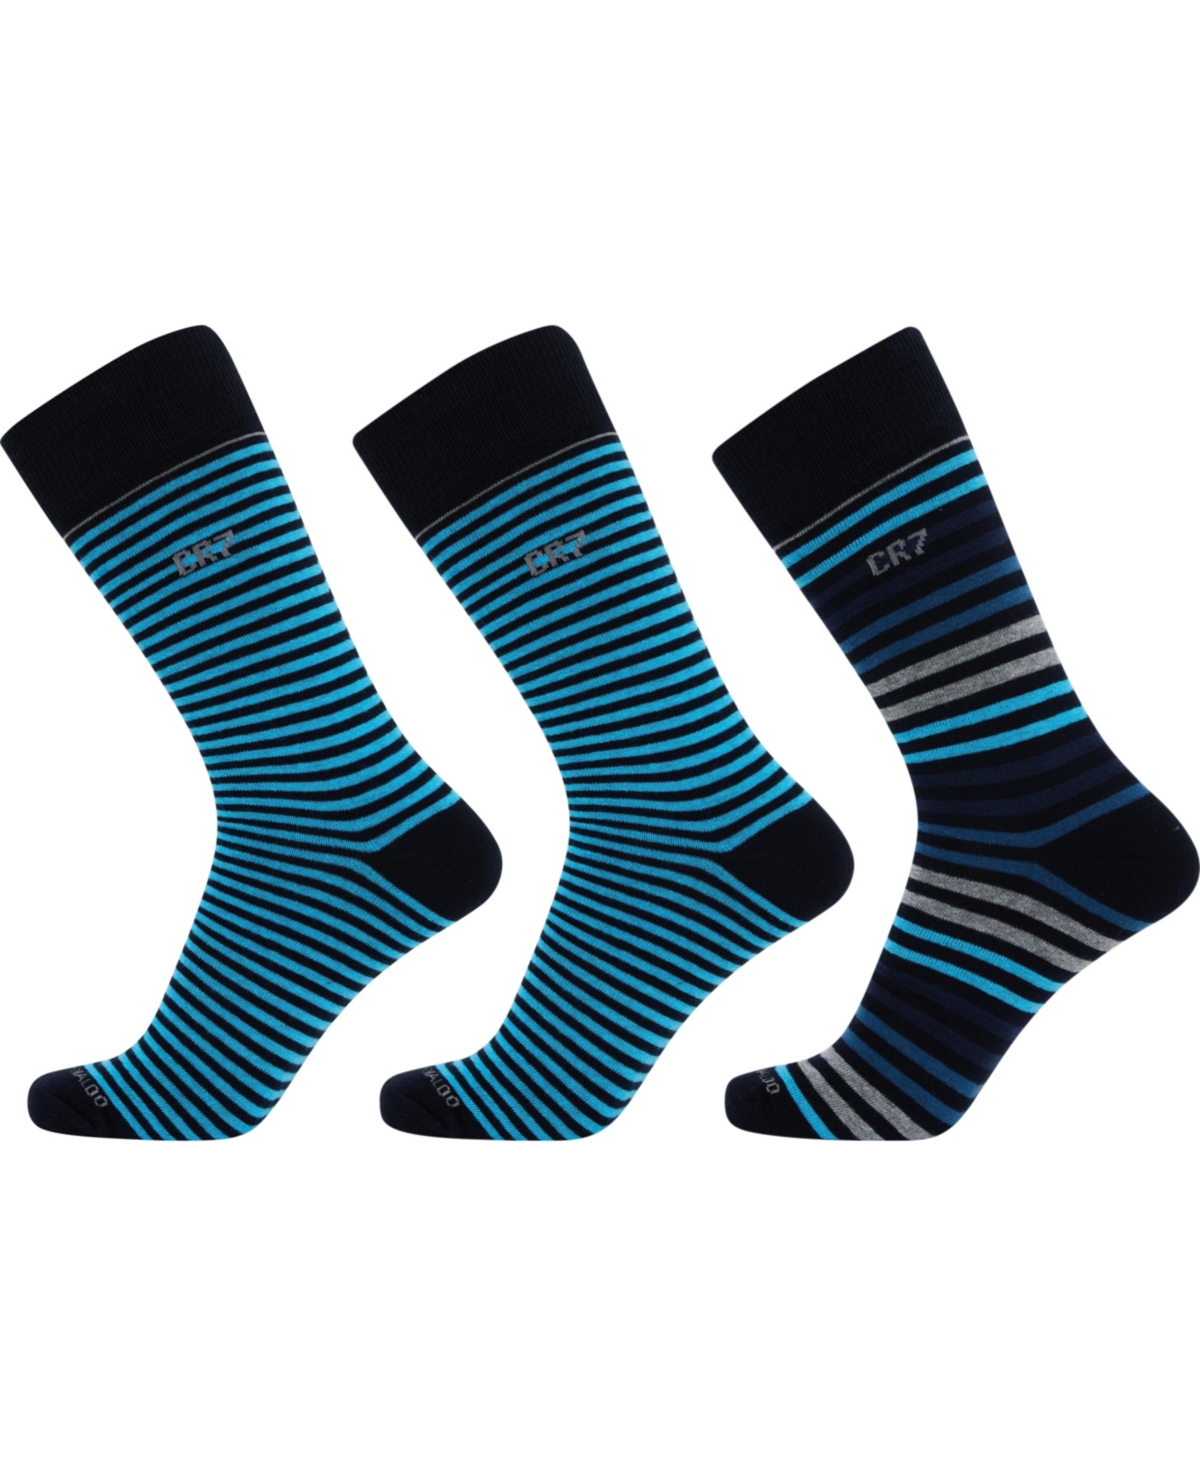 Men's Fashion Socks in Gift Box, Pack of 3 - Blue, Black, Gray